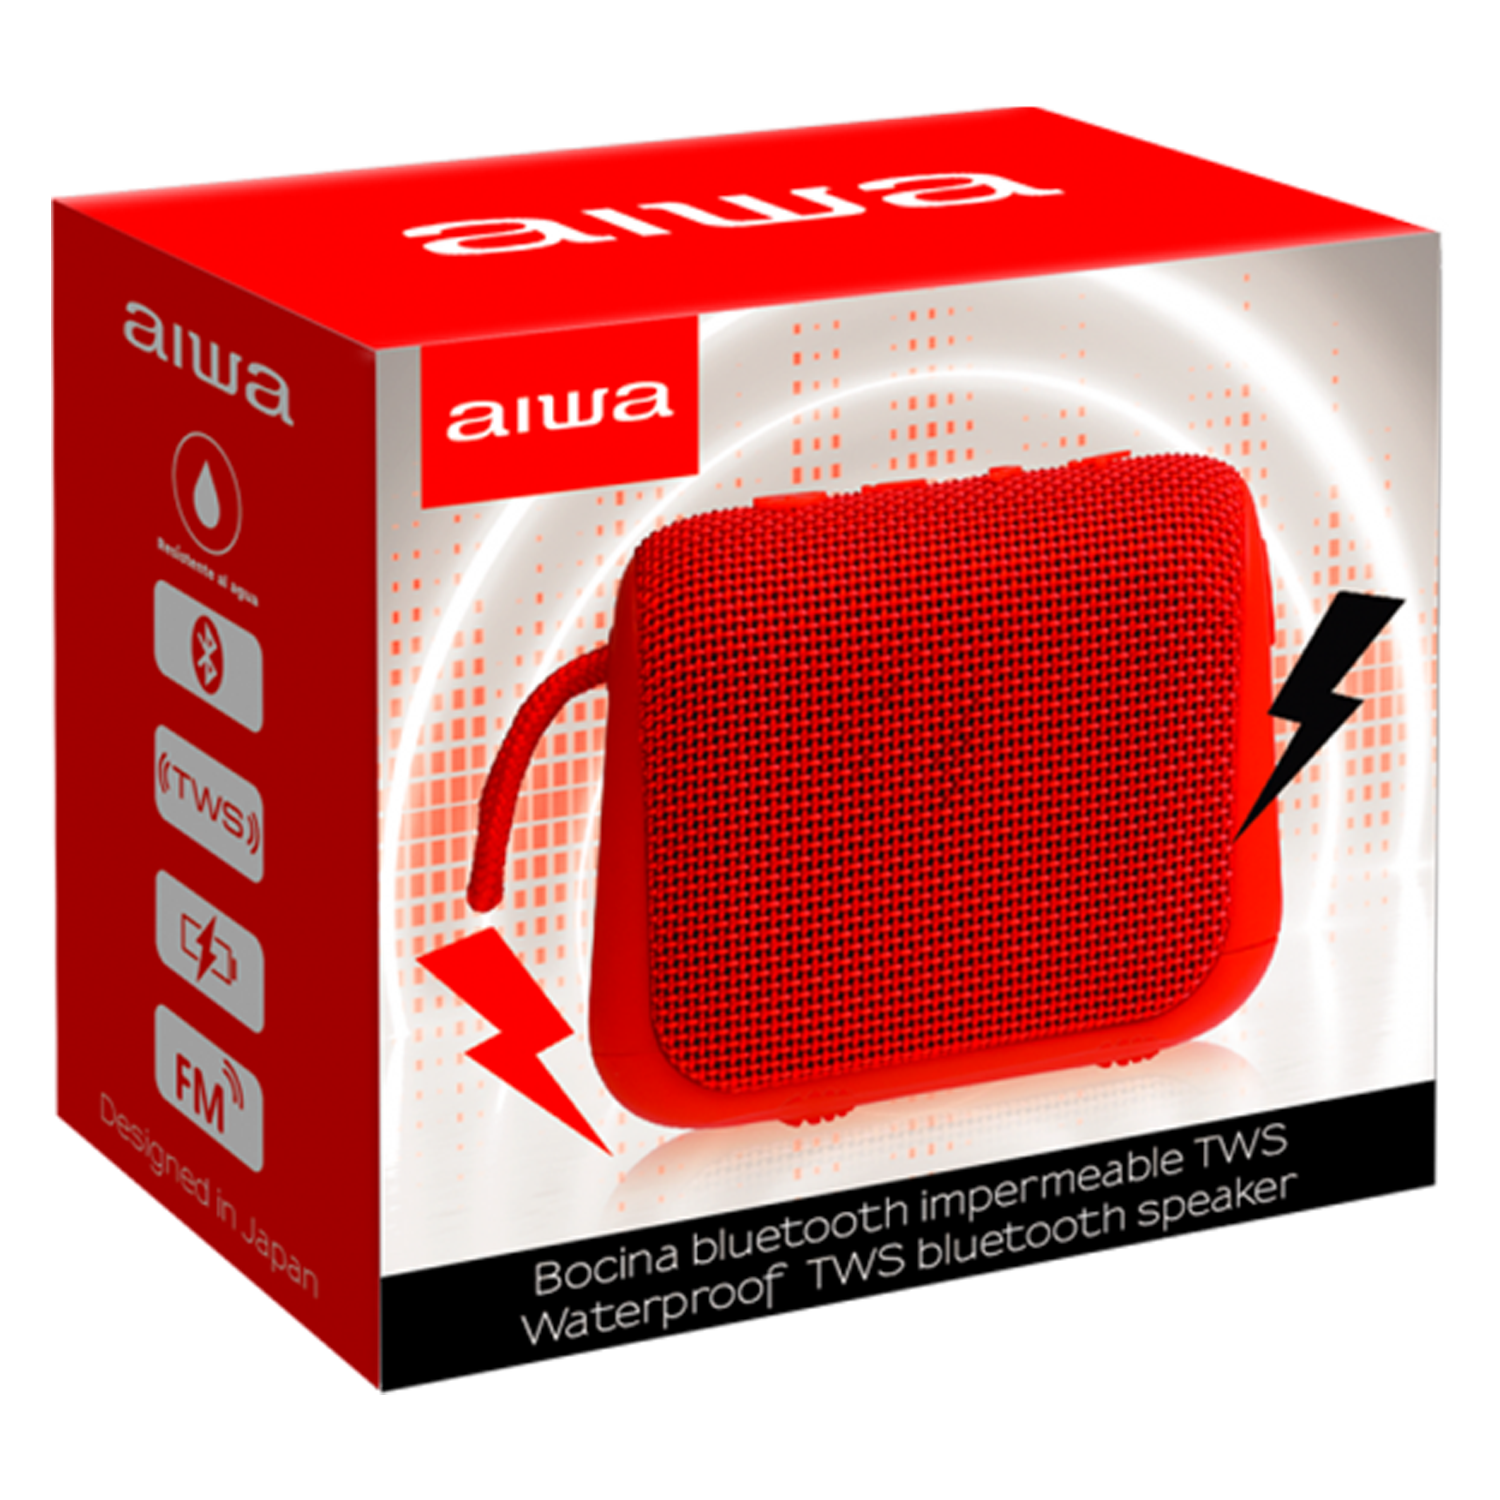 Caixa de Som Aiwa AW-KF3R Bluetooth - Vermelho